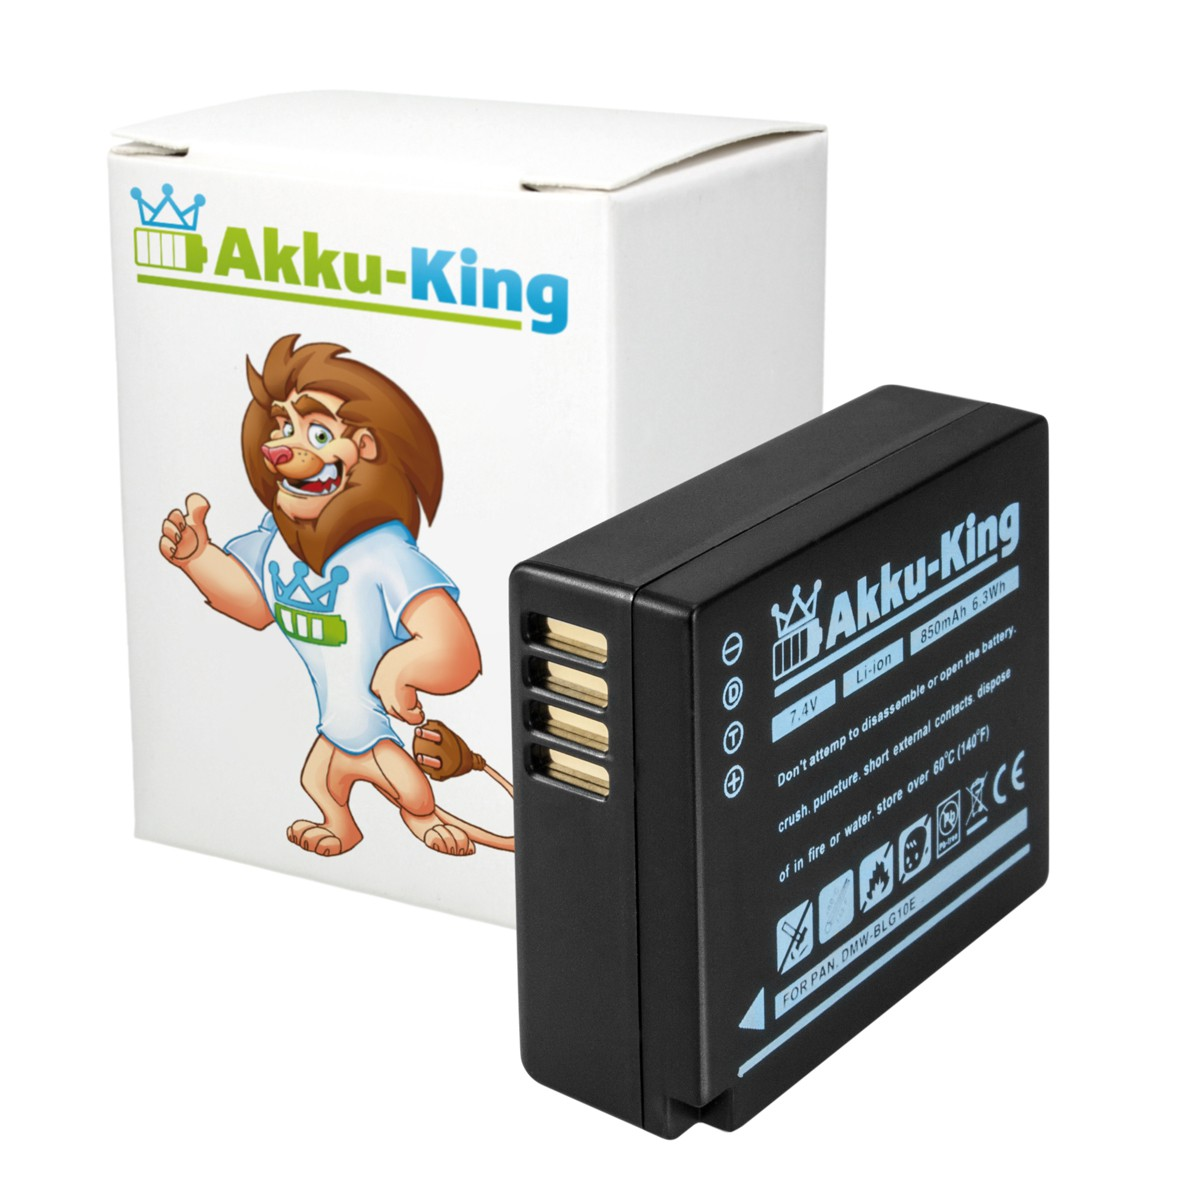 AKKU-KING Akku kompatibel Kamera-Akku, Panasonic mit Volt, 850mAh Li-Ion DMW-BLG10E 7.4